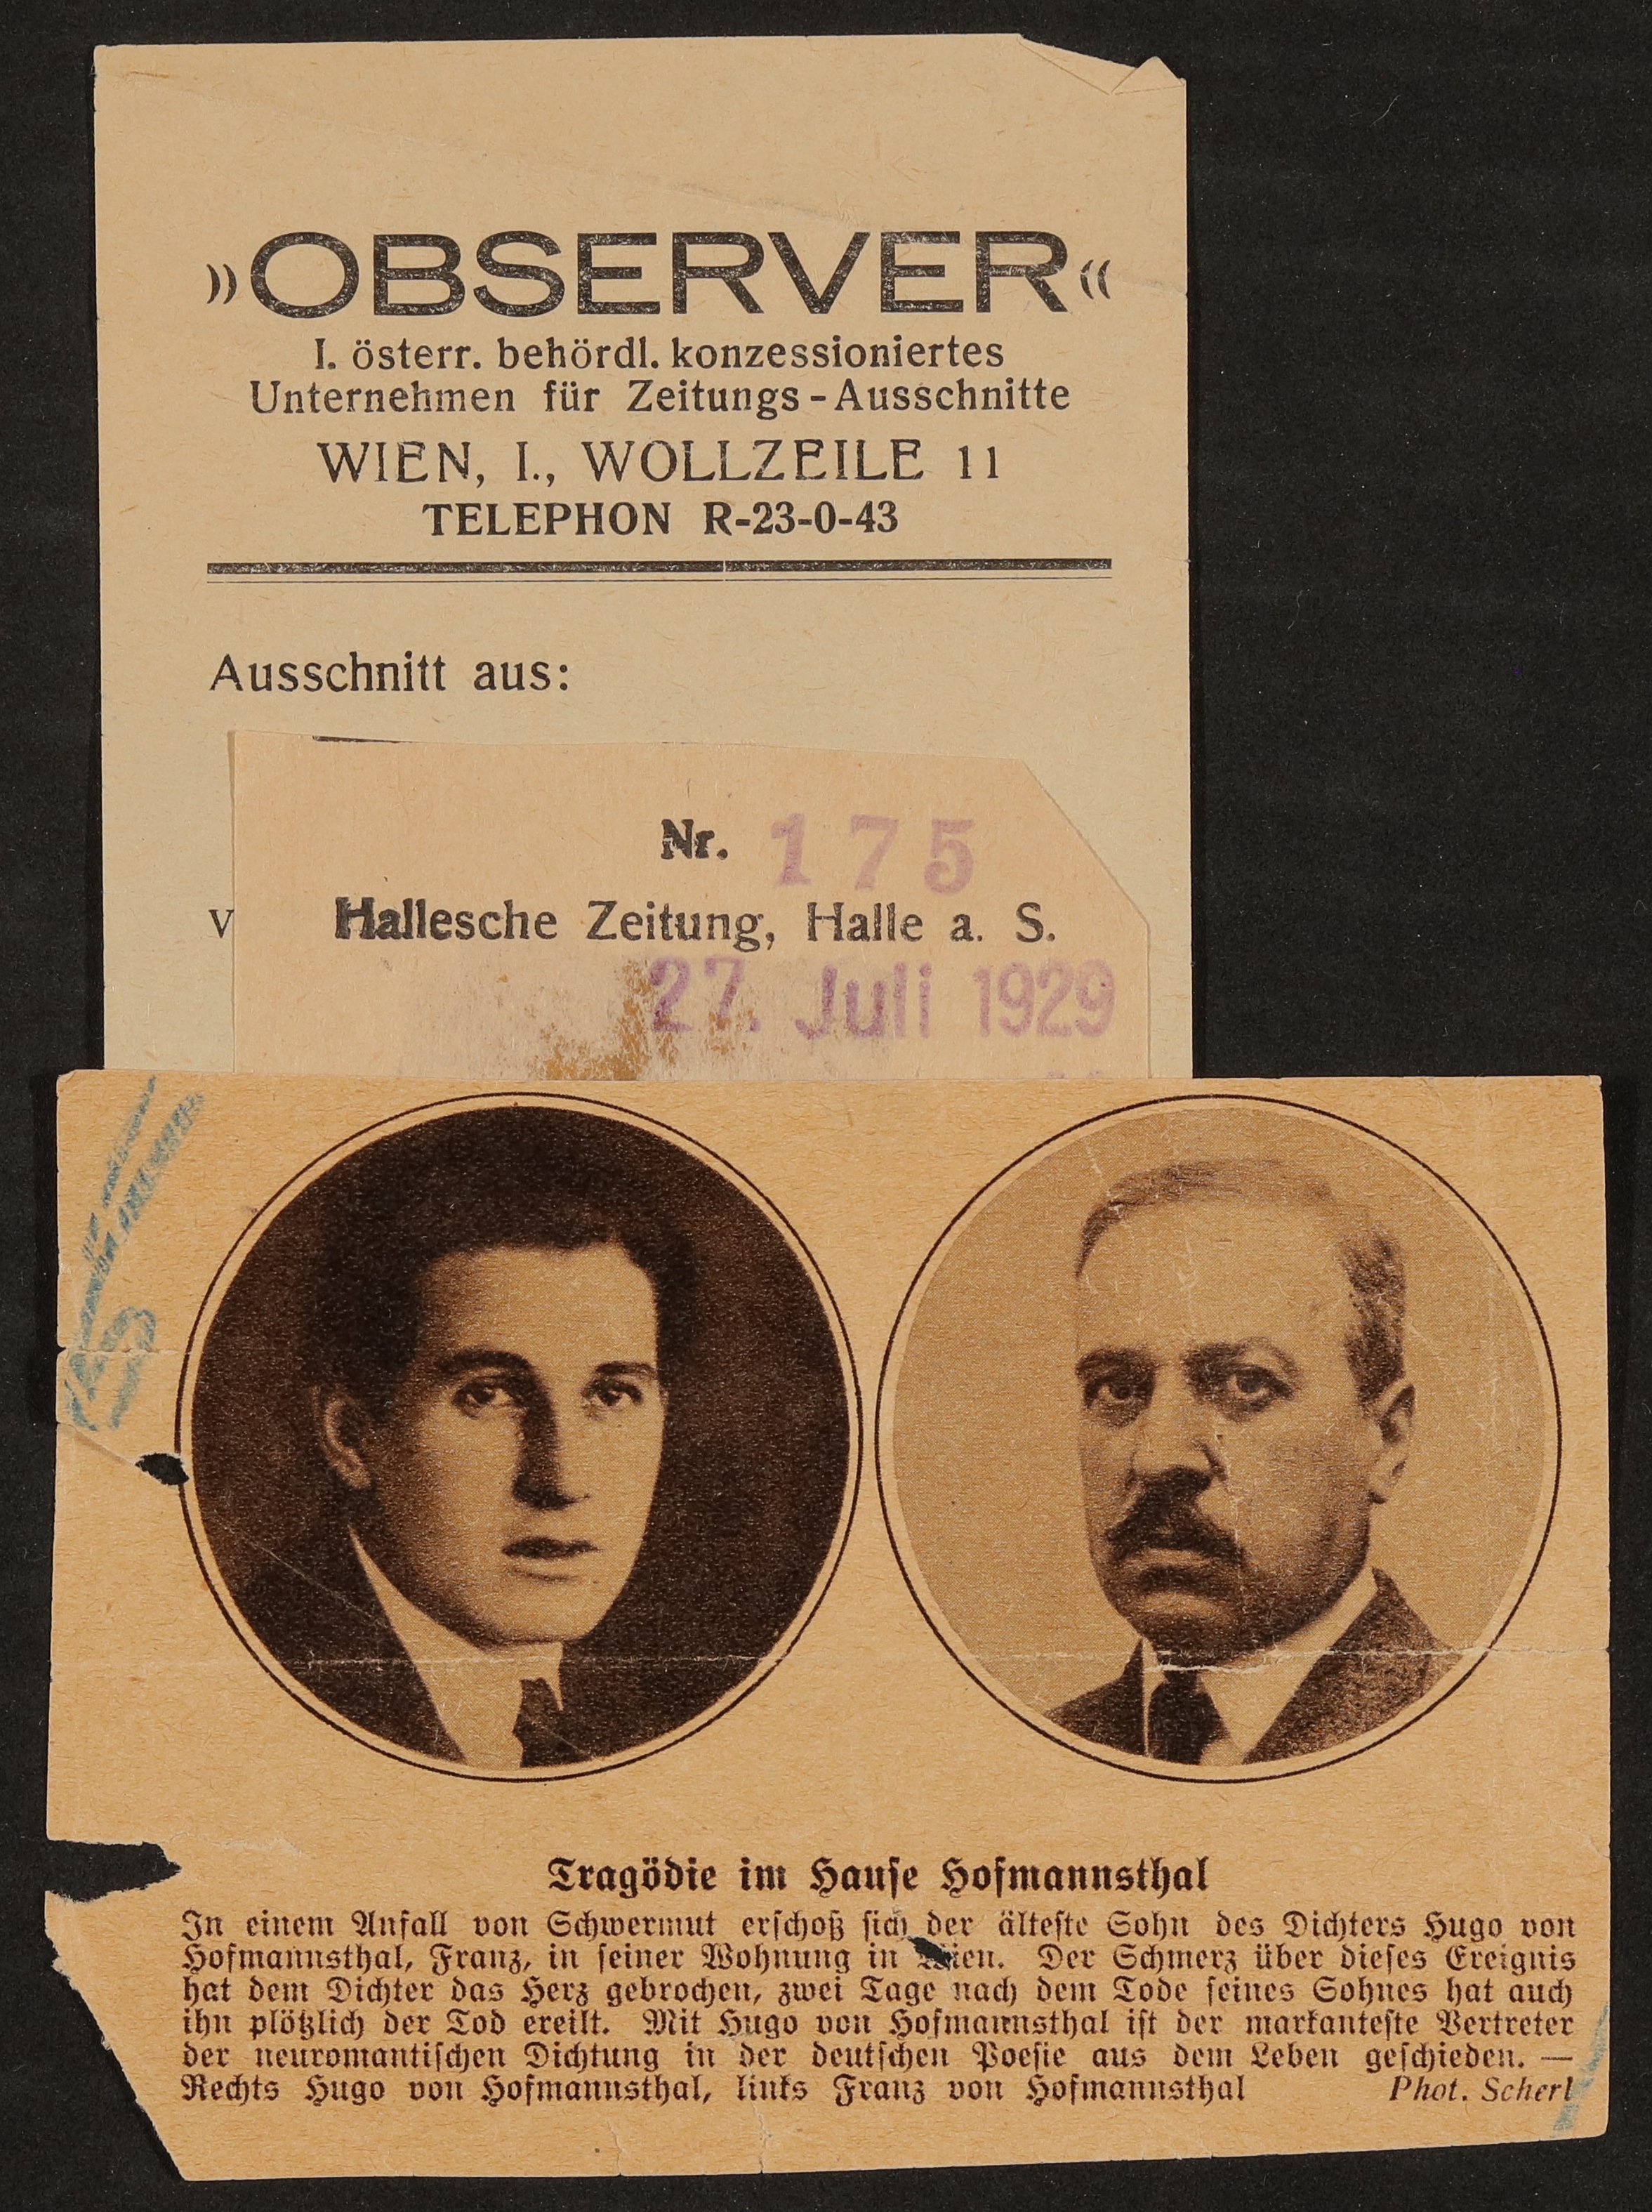 Ausschnitt aus "Hallesche Zeitung" vom 27.07.1929 zum Tod von Franz und Hugo von Hofmannsthal (Observer) (Freies Deutsches Hochstift / Frankfurter Goethe-Museum CC BY-NC-SA)